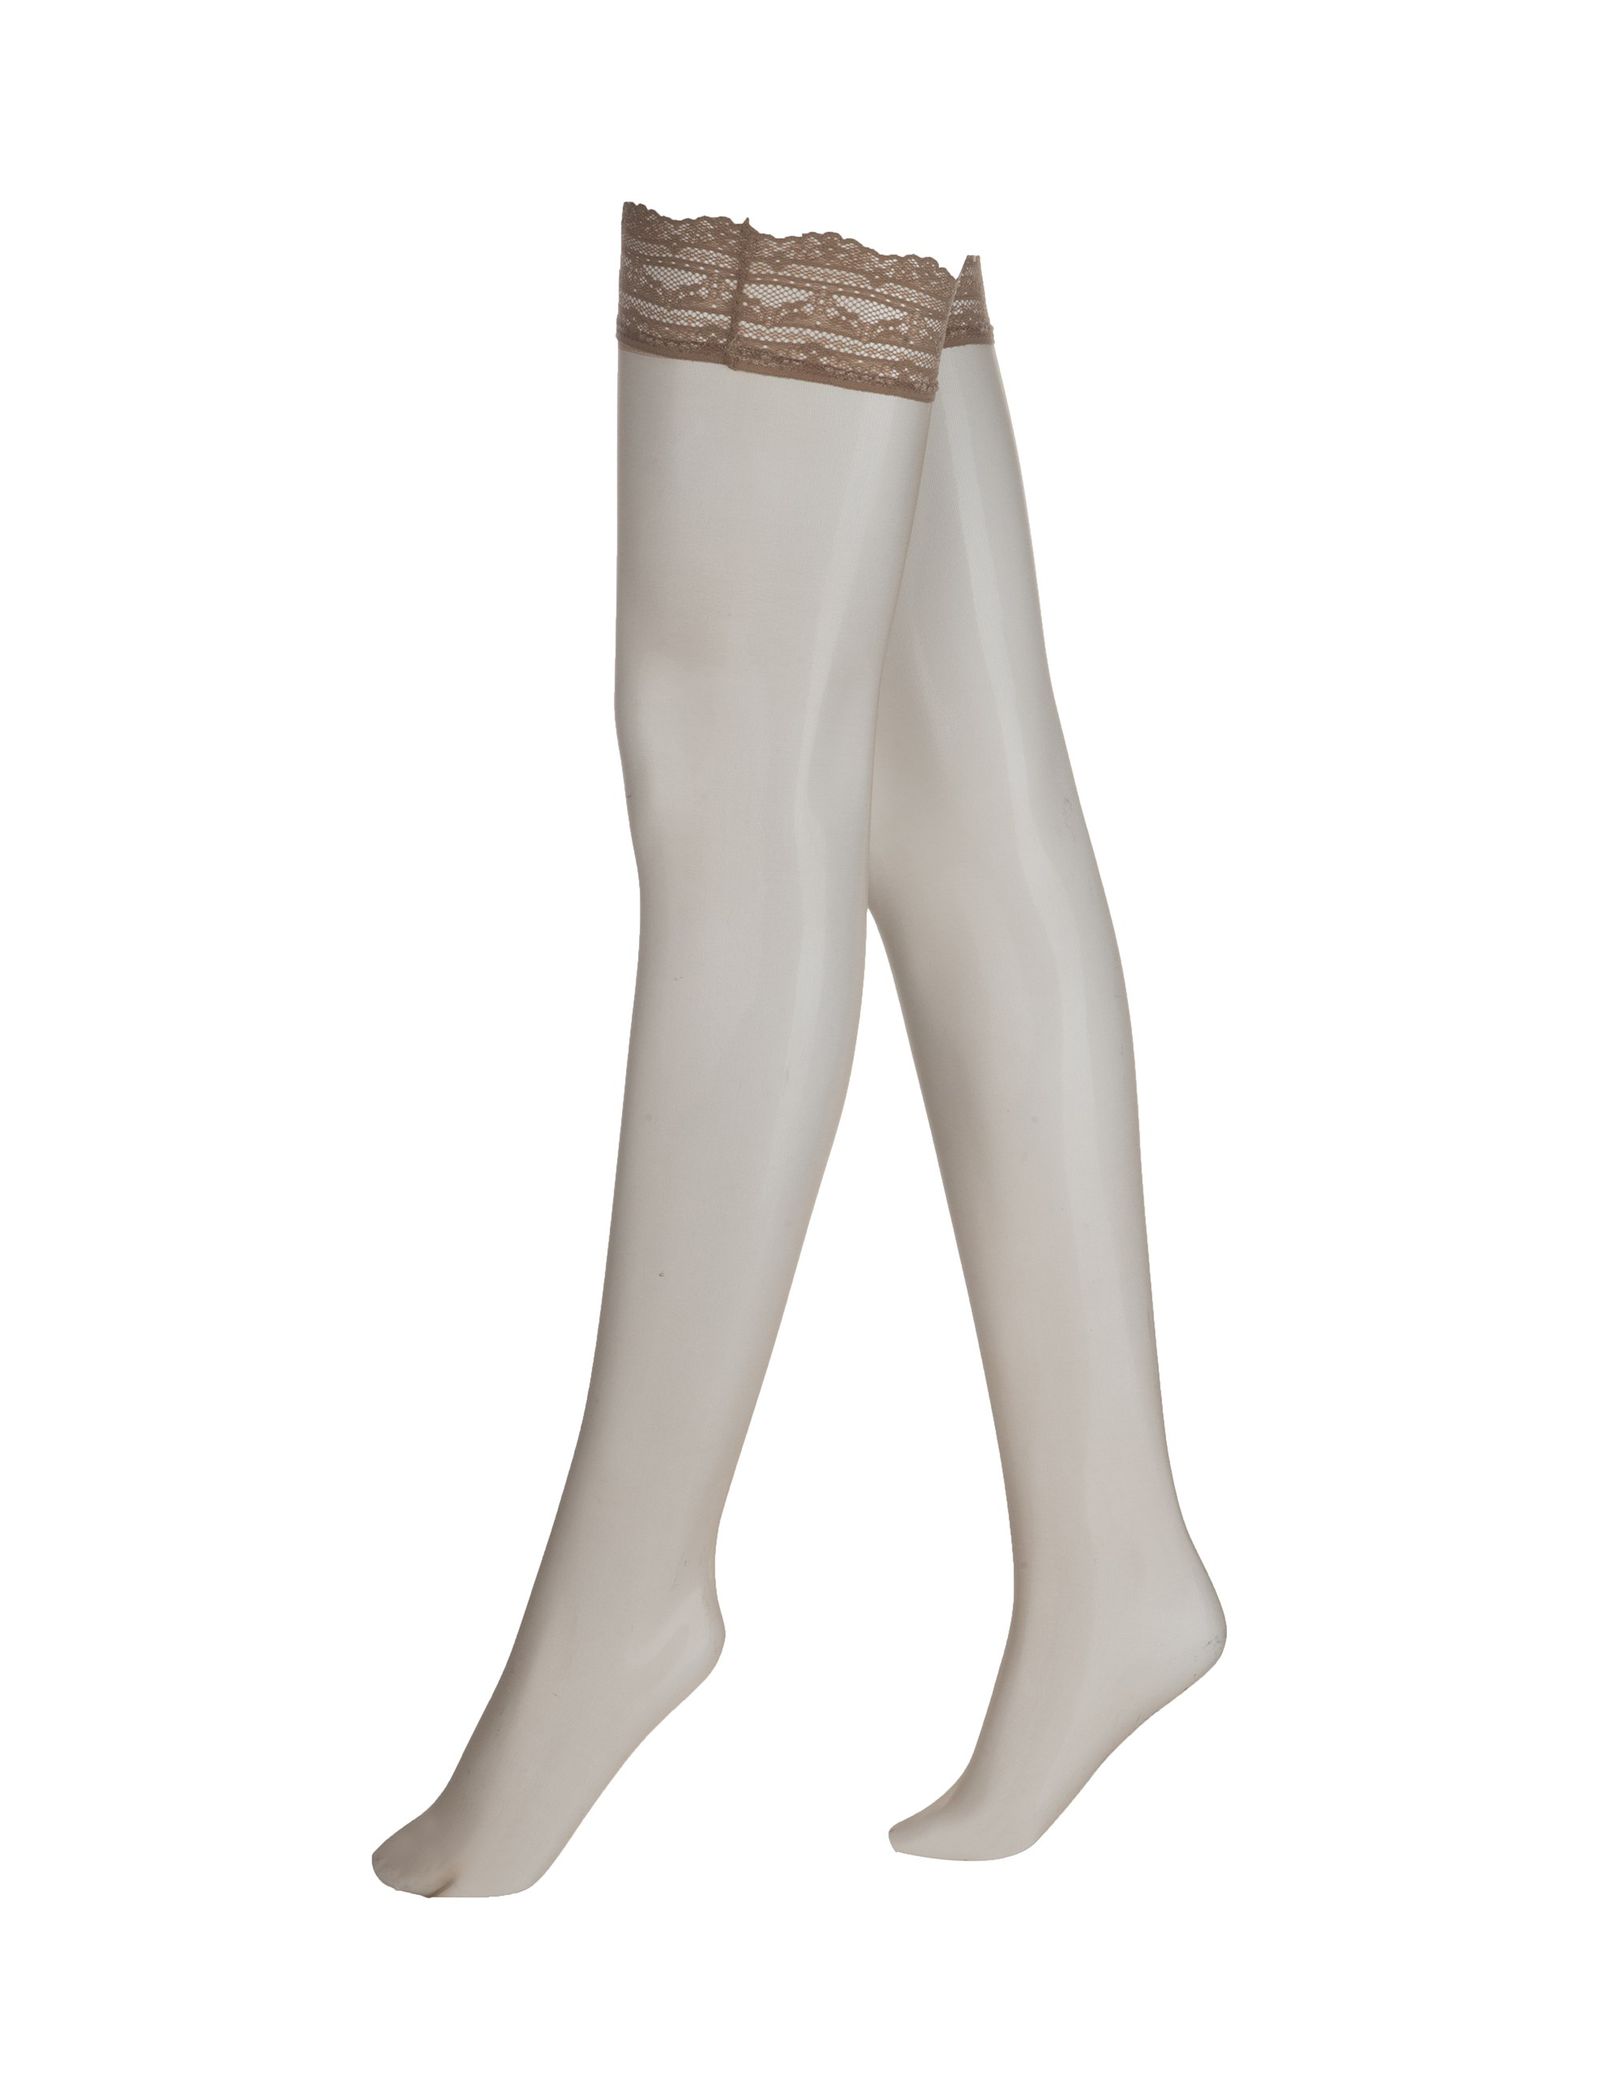 جوراب ساق بلند زنانه - اتام - کرم - 3